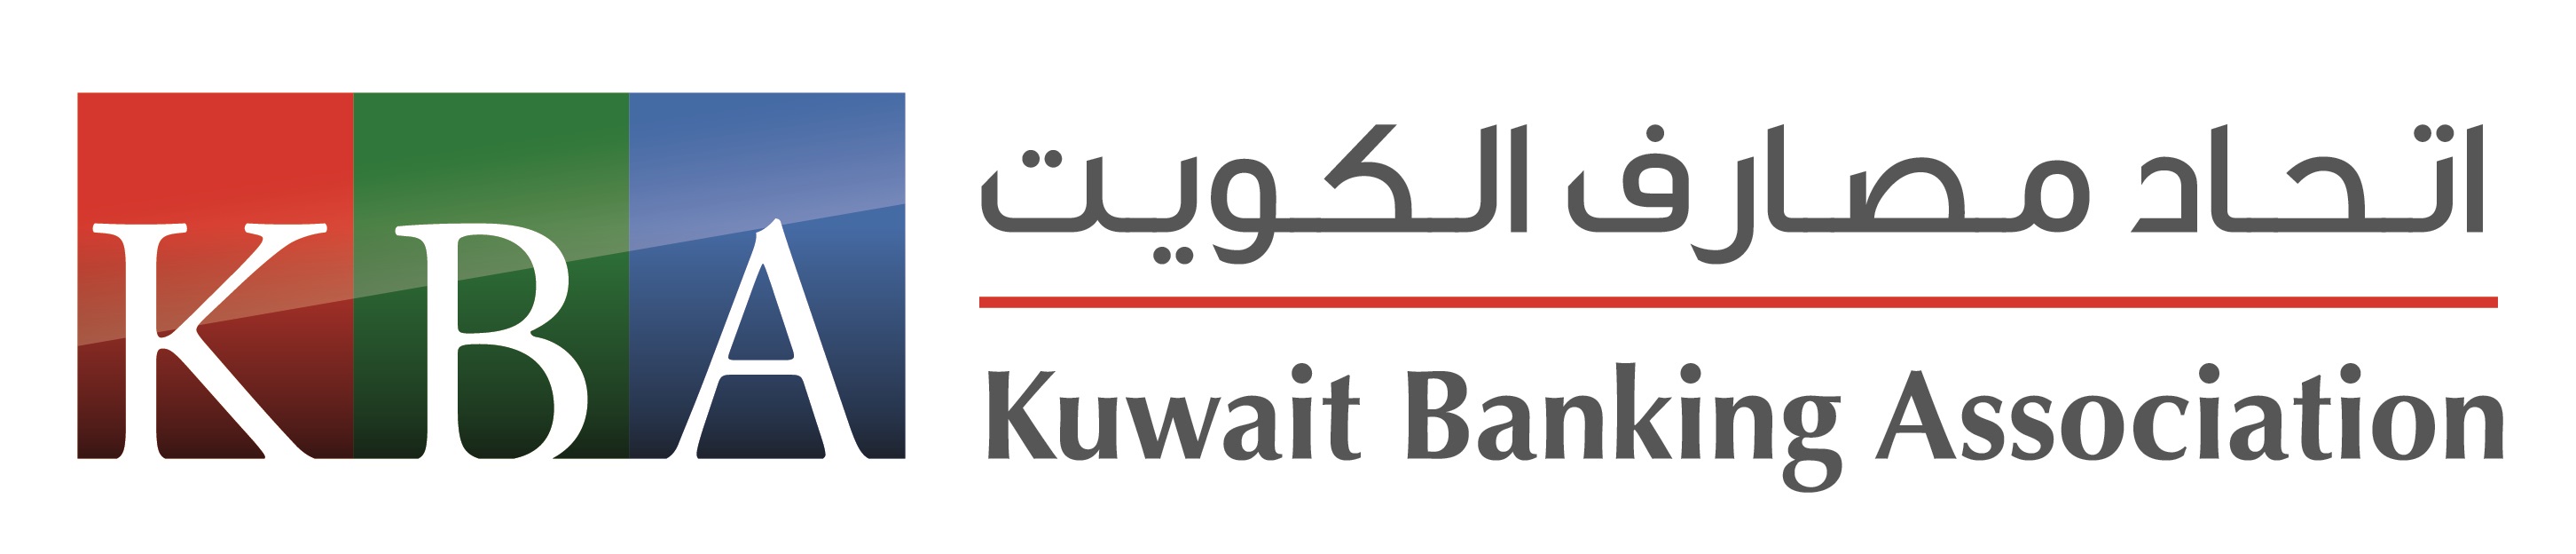 L'Union des banques du Koweït